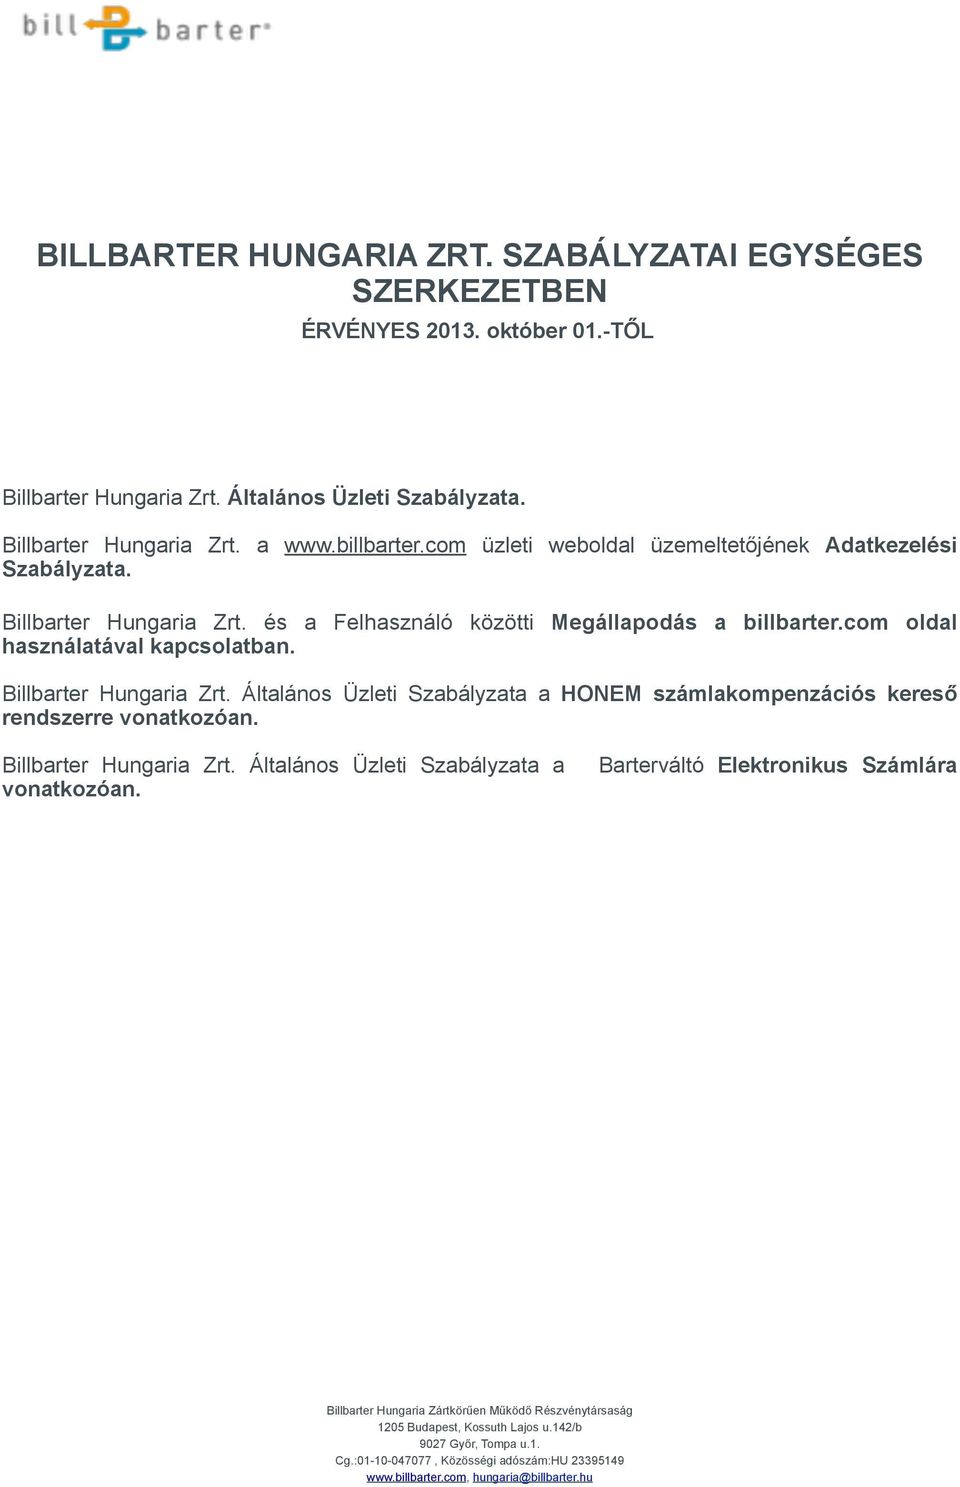 Billbarter Hungaria Zrt. Általános Üzleti Szabályzata a HONEM számlakompenzációs kereső rendszerre vonatkozóan. Billbarter Hungaria Zrt. Általános Üzleti Szabályzata a vonatkozóan.